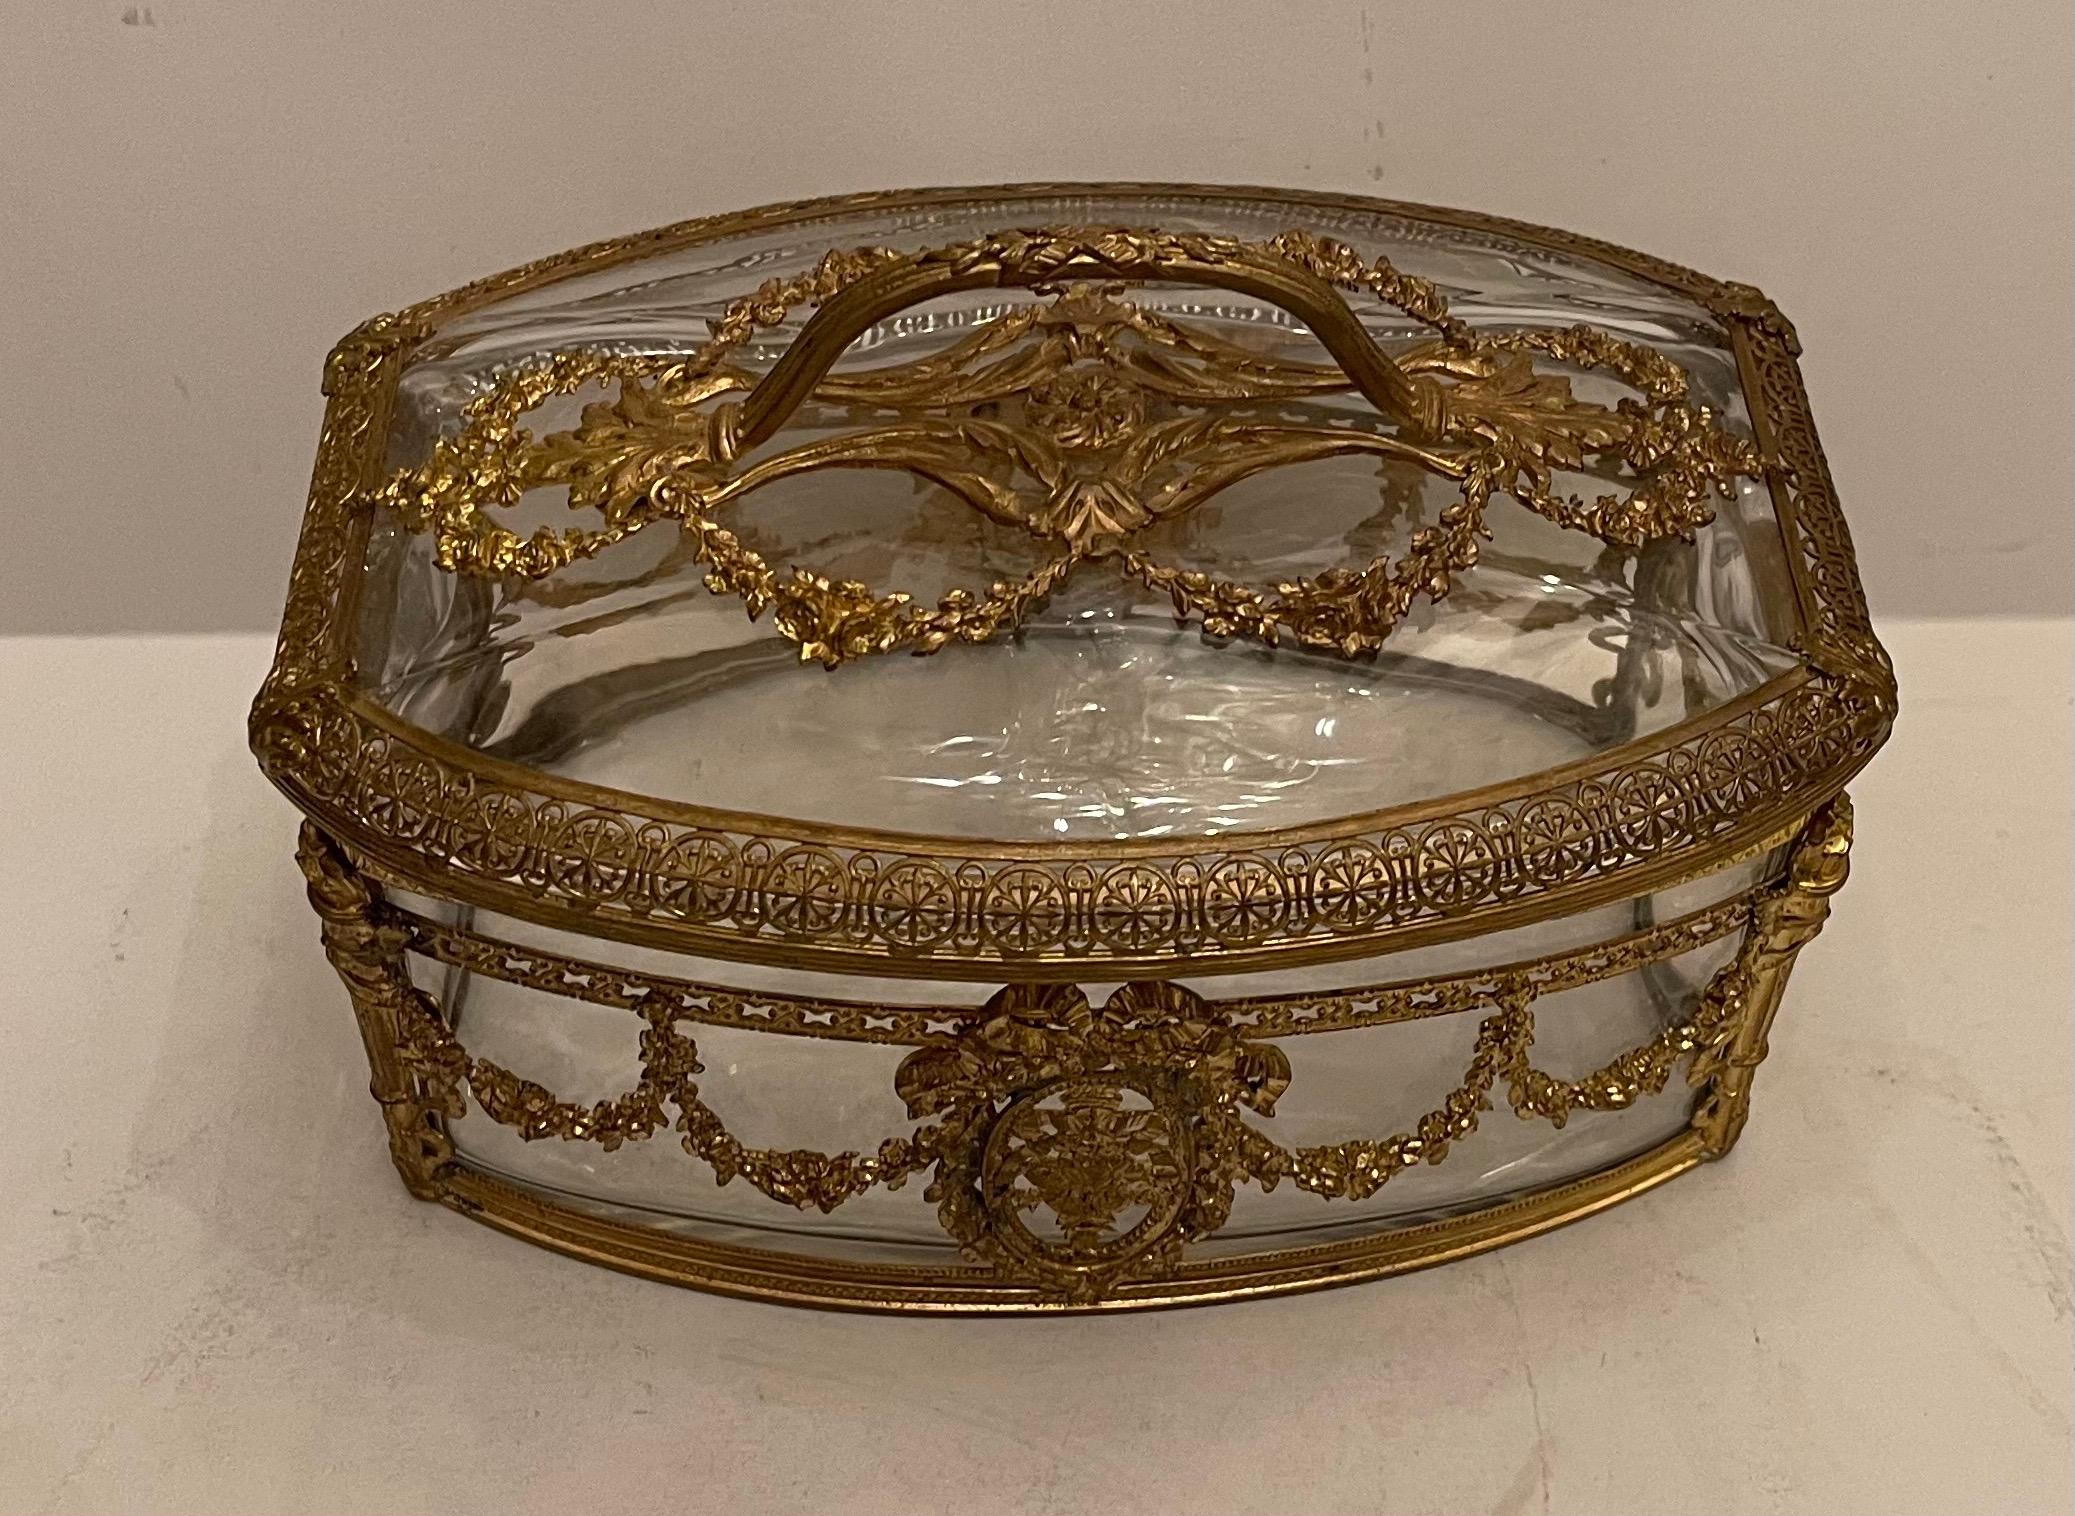 Merveilleux grand coffret à bijoux de style Napoléon III en bronze doré et cristal / verre avec poignée ouverte.